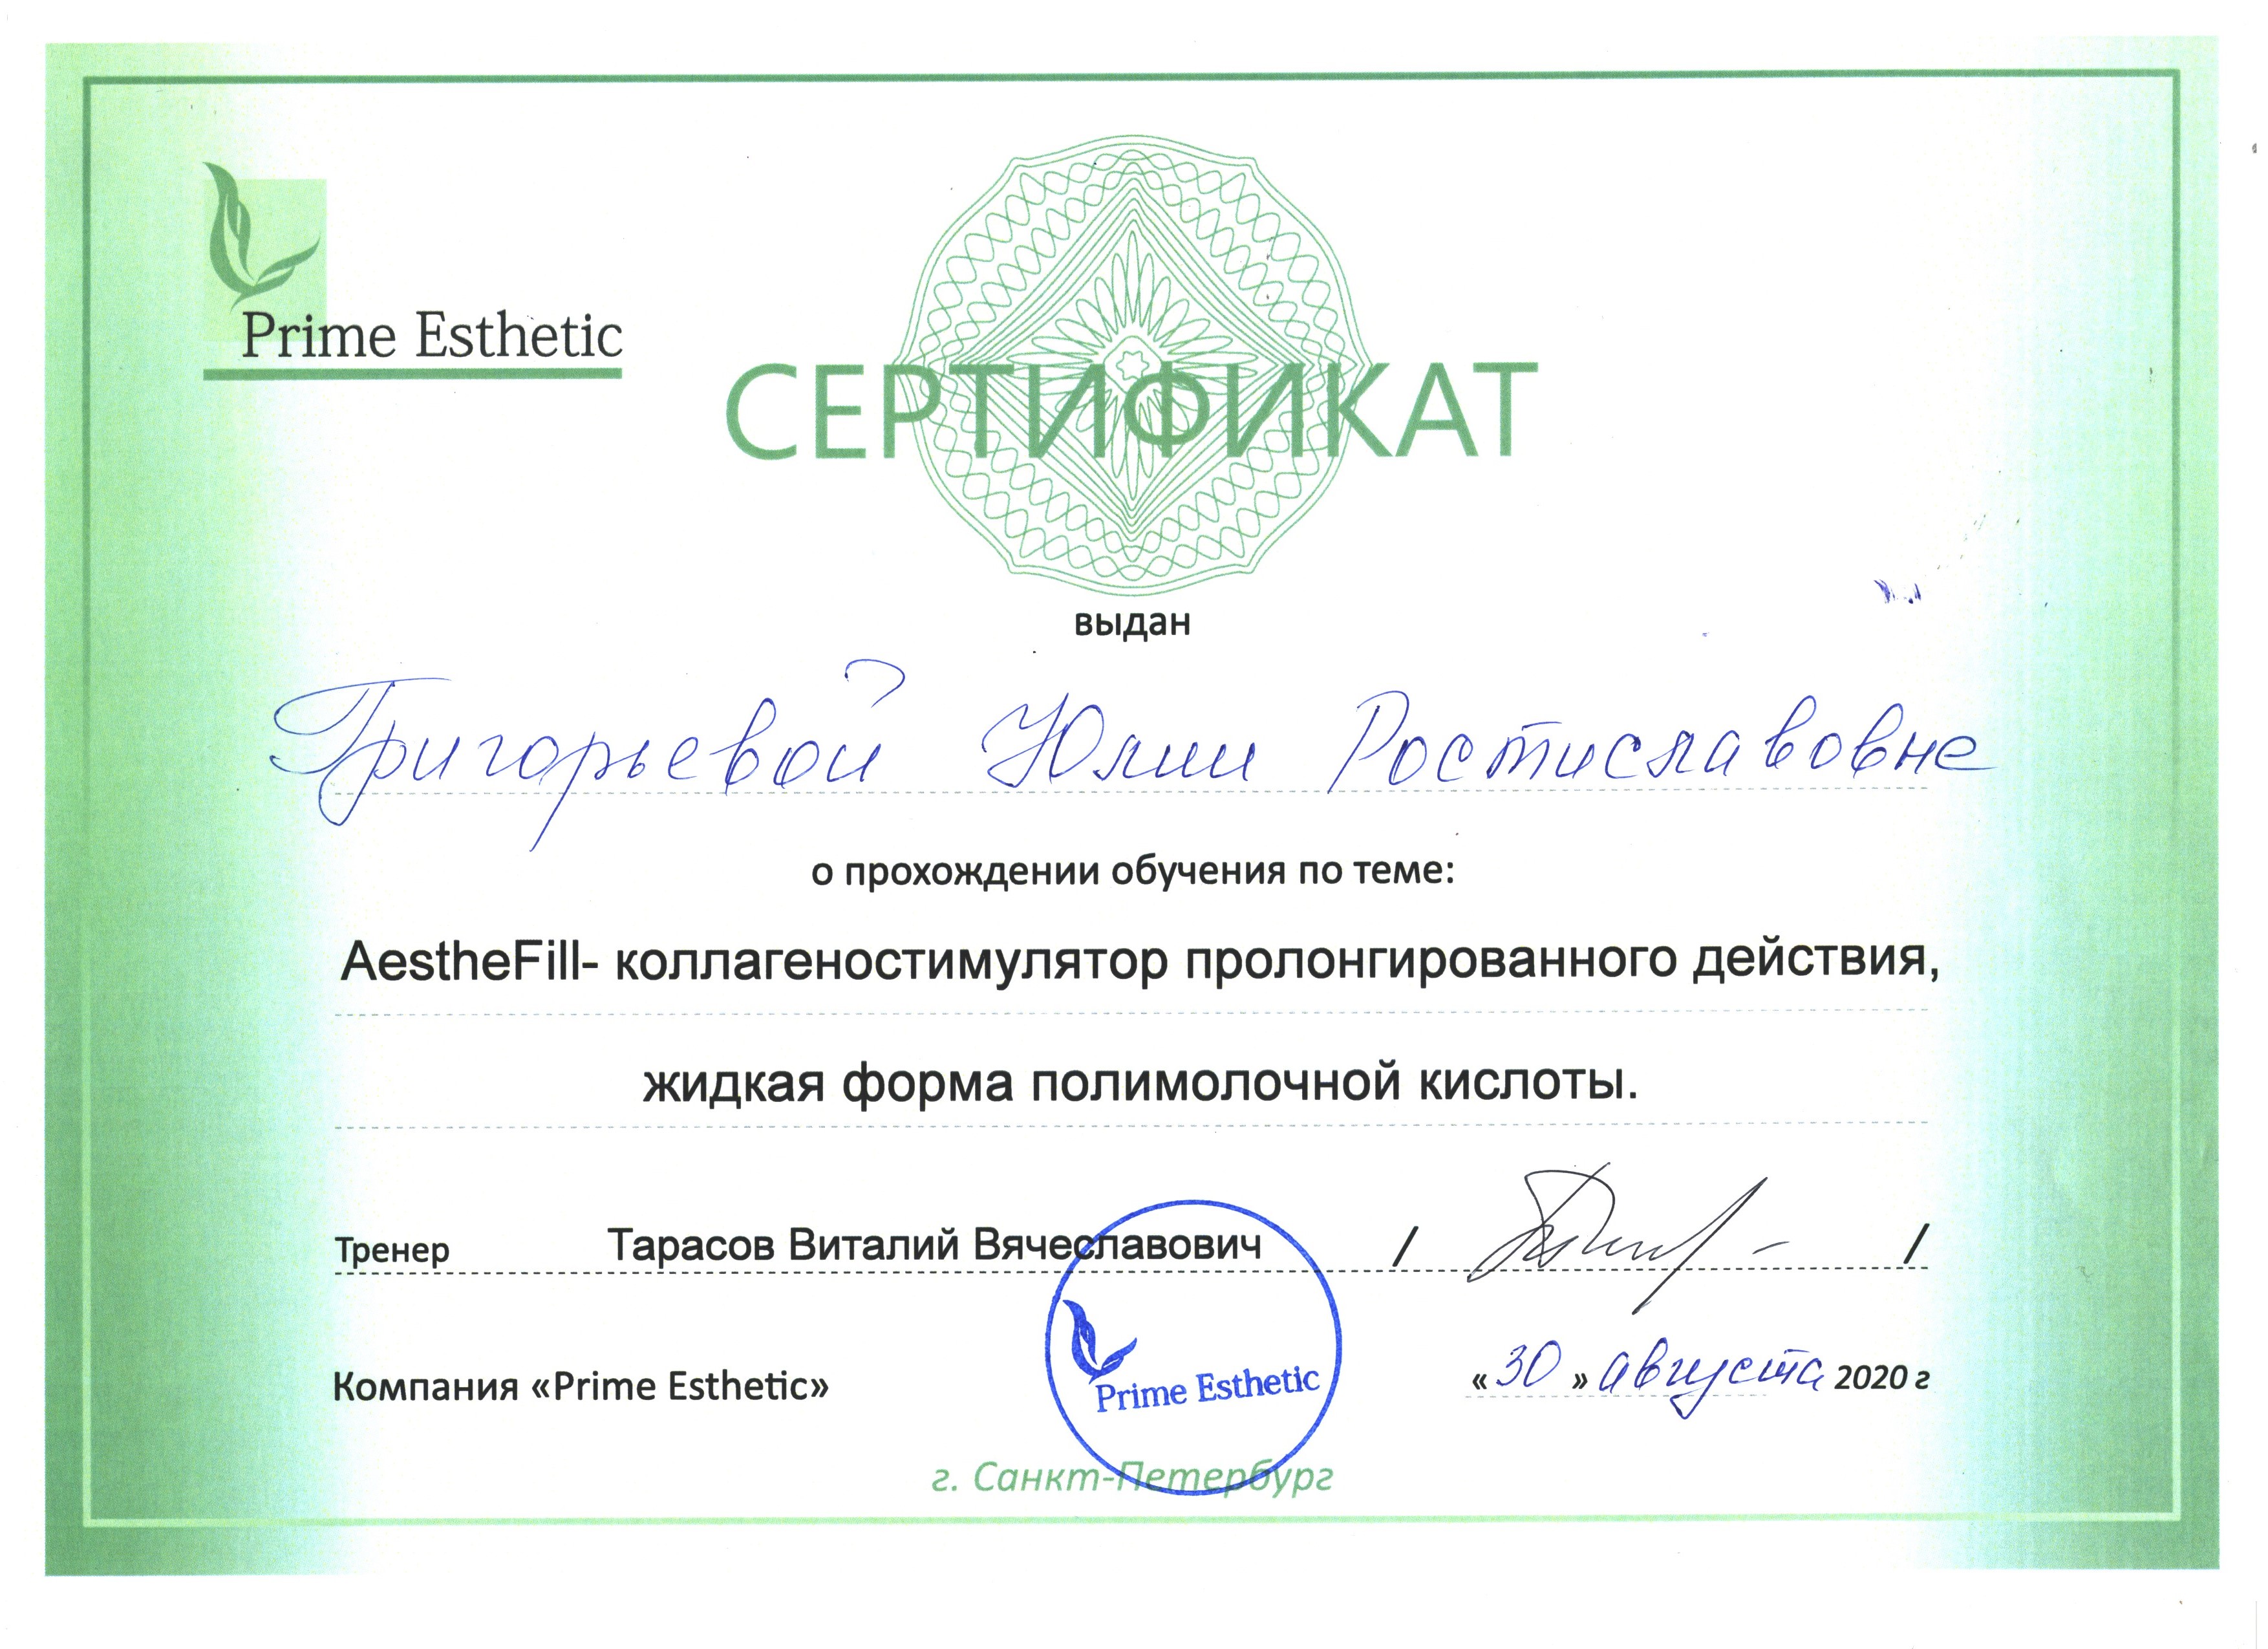 Сертификат — Обучение «Aesthe-Fill». Григорьева Юлия Ростиславовна